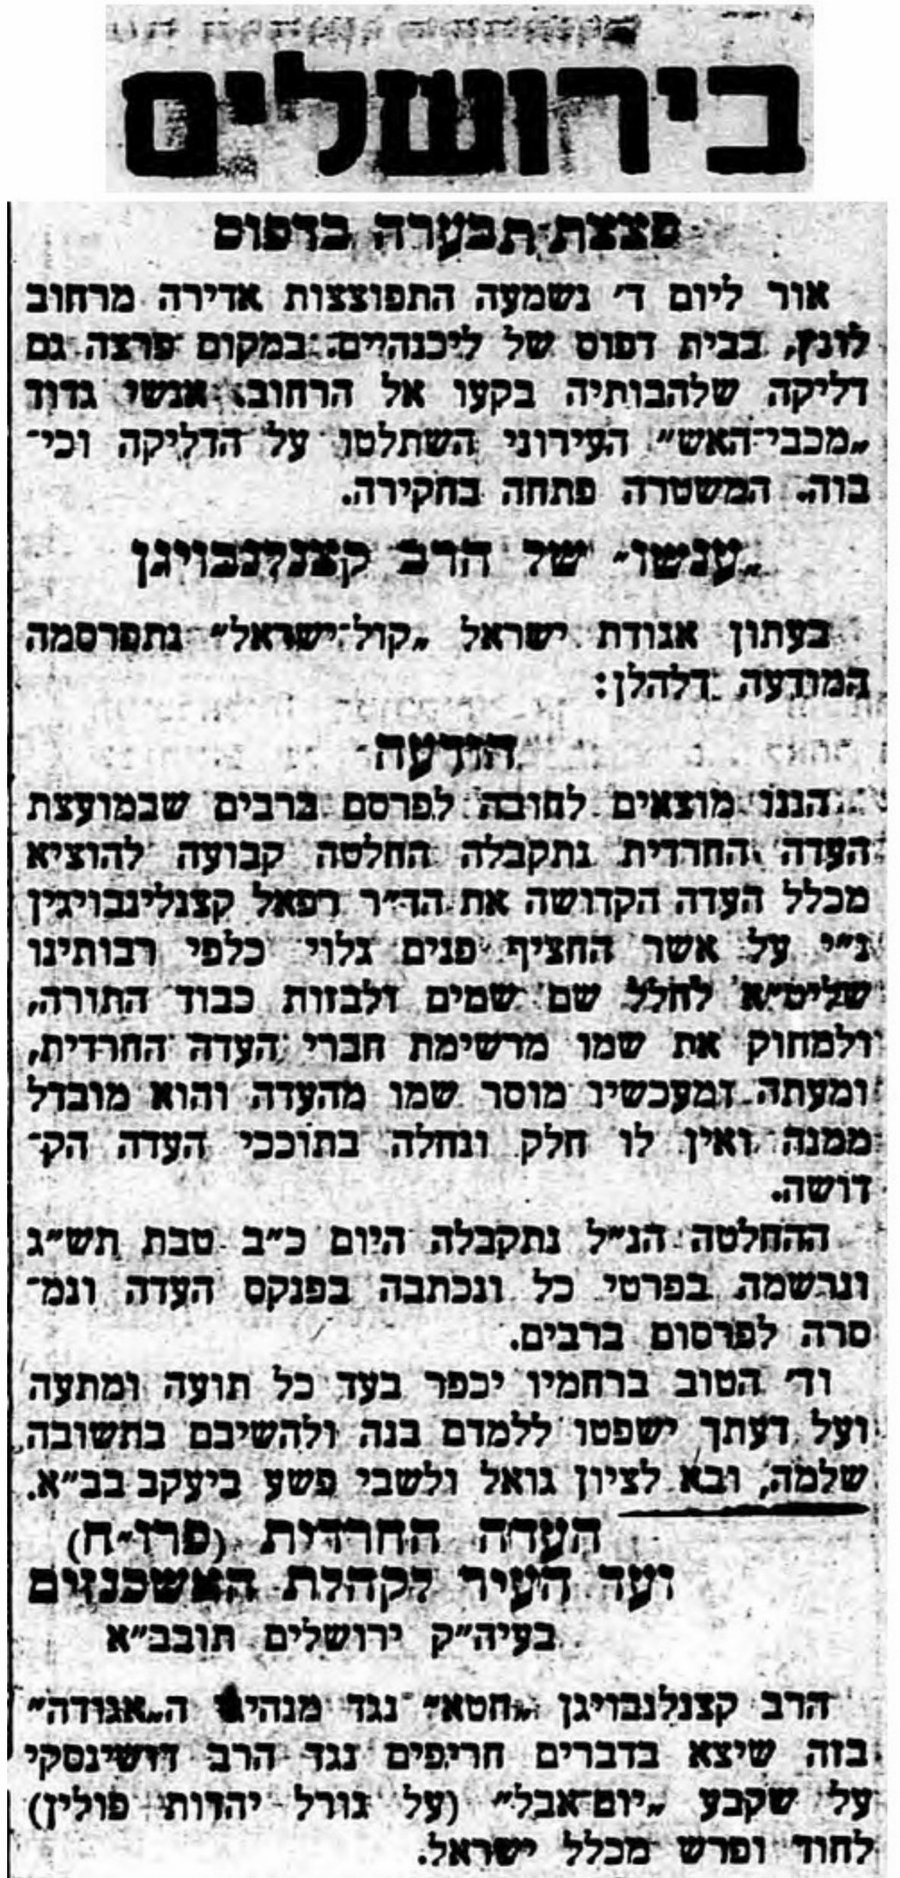 עיתון הארץ מסקר את הפולמוס בתוך היהדות החרדית תחת הכותרת "עונשו של הרב קצנלבוגן"